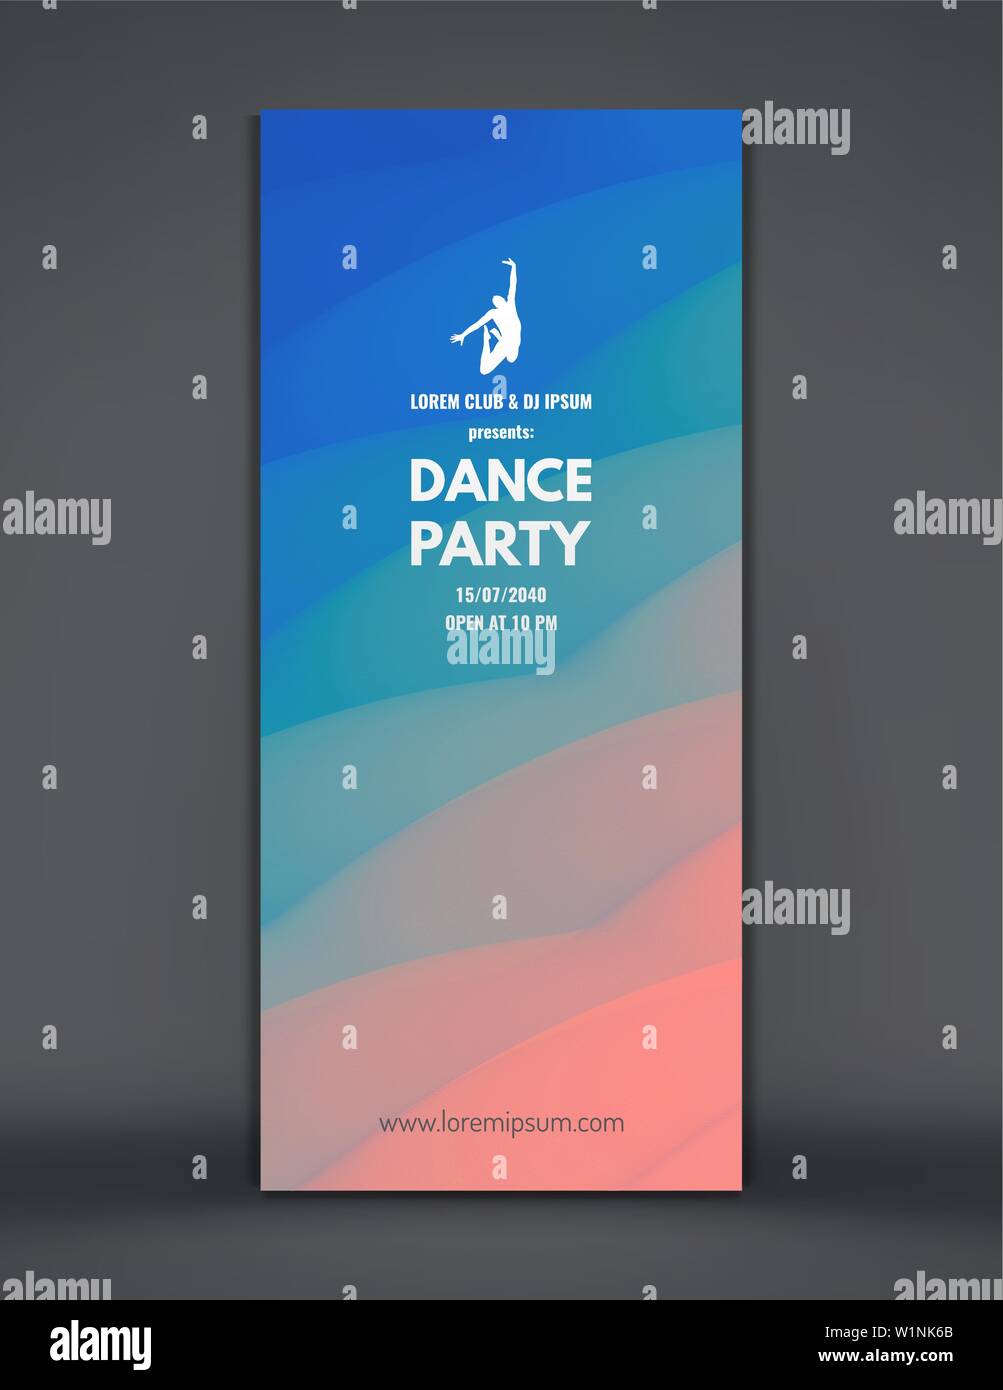 Dance Party invitation avec la date et l'heure d'informations. Music event flyer, bannière ou stand. Fond ondulé 3D avec effet dynamique. Vecteur Vertical illustr Illustration de Vecteur